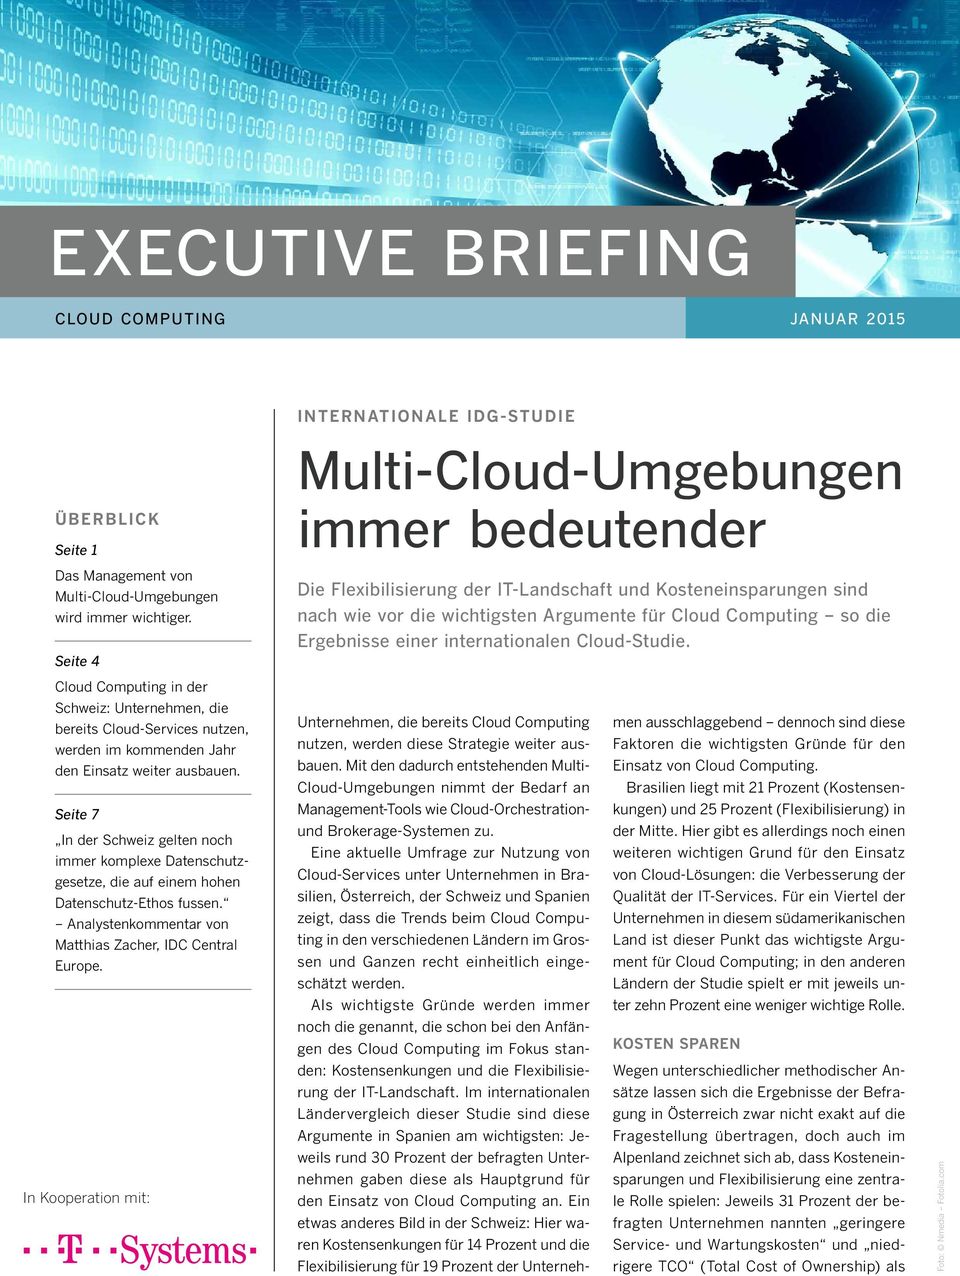 Computing so die Ergebnisse einer internationalen Cloud-Studie. Cloud Computing in der Schweiz: Unternehmen, die bereits Cloud-Services nutzen, werden im kommenden Jahr den Einsatz weiter ausbauen.